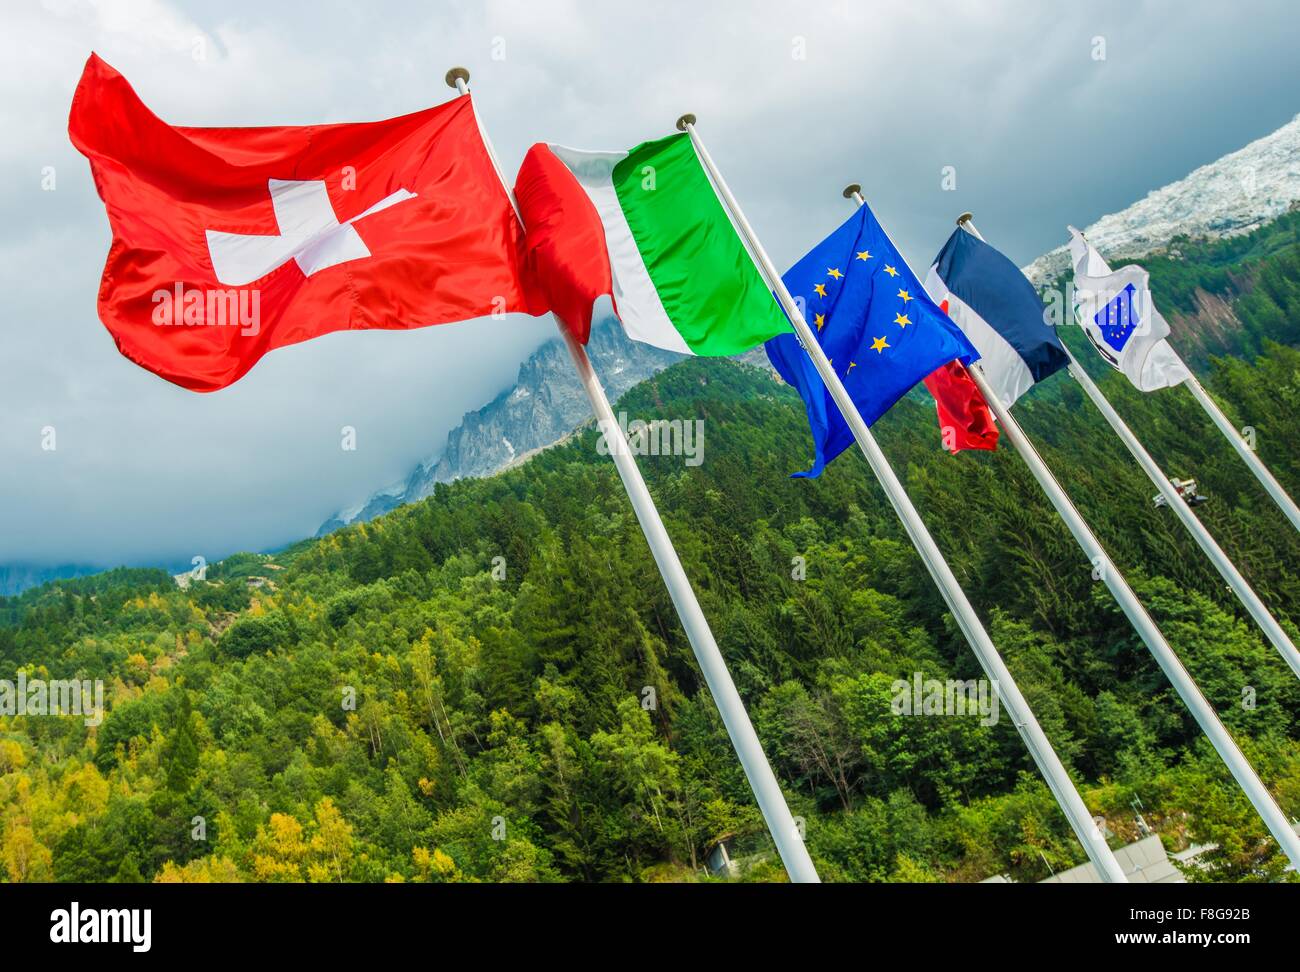 Europäische Union Flaggen. Schweiz, Italien, EU-Flagge und Frankreich.  Mont-Blanc-Tunnel. Chamonix, Frankreich Stockfotografie - Alamy